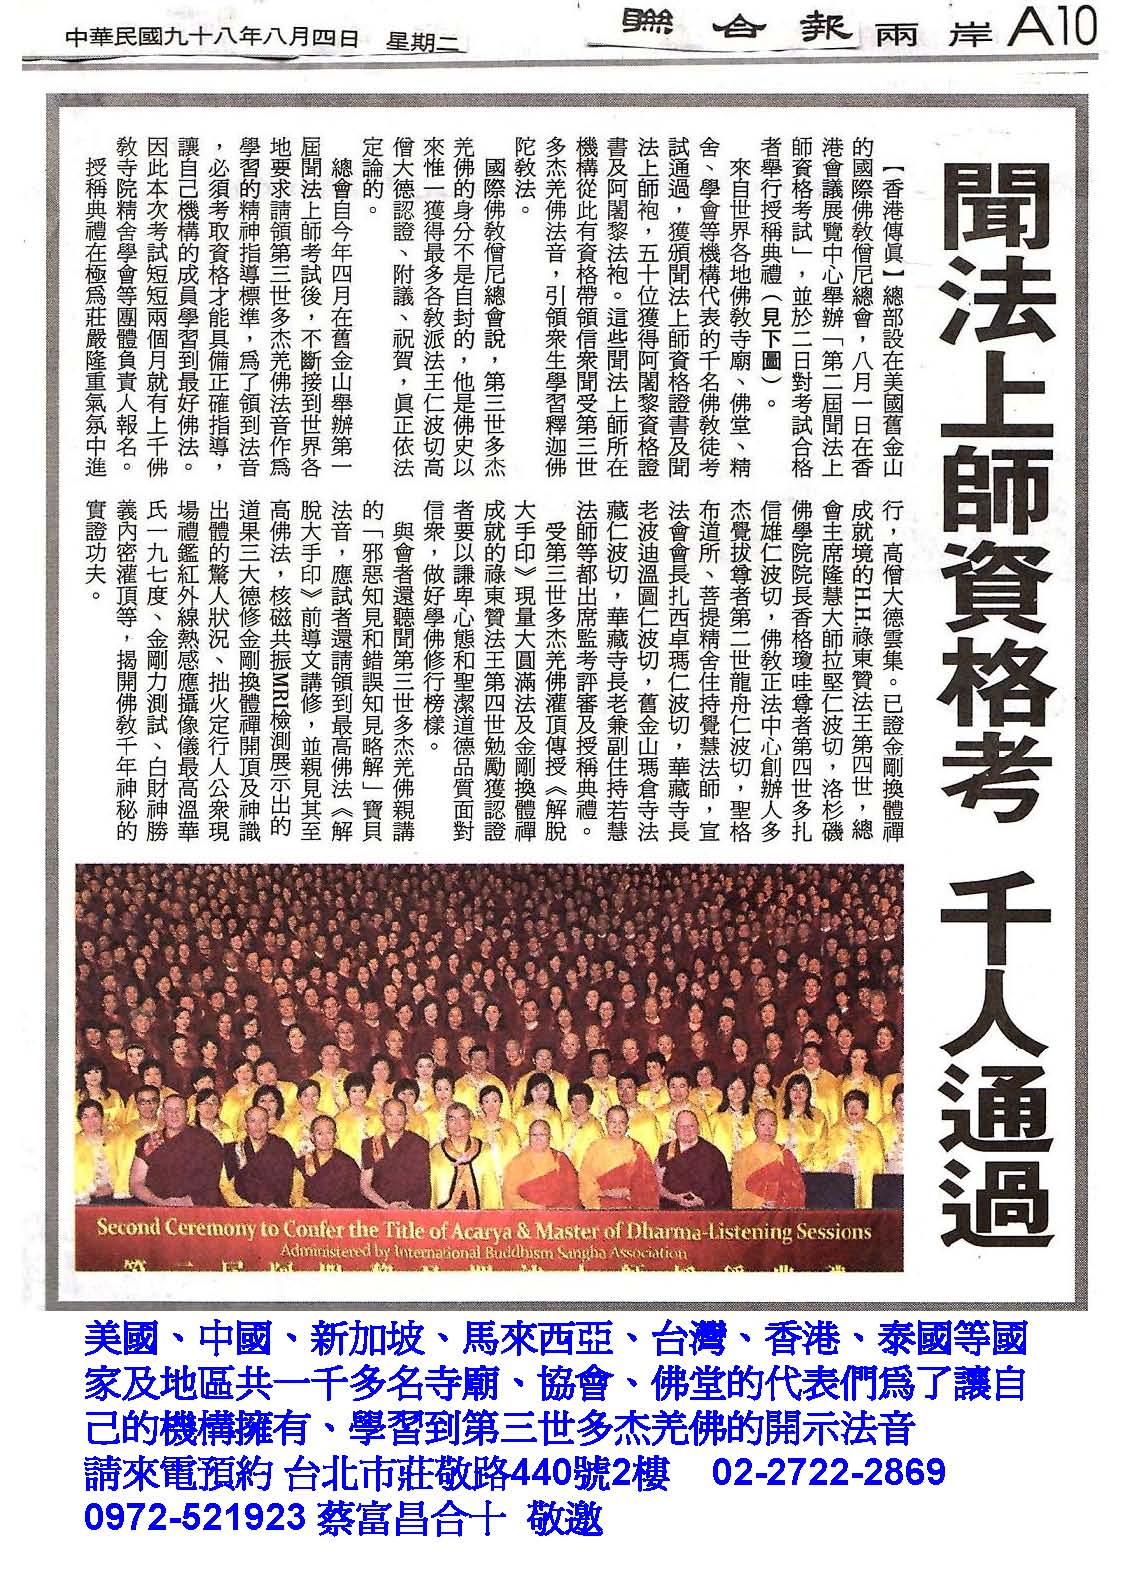 上千佛教寺院、協會等機構齊聚香港應考聞法上師